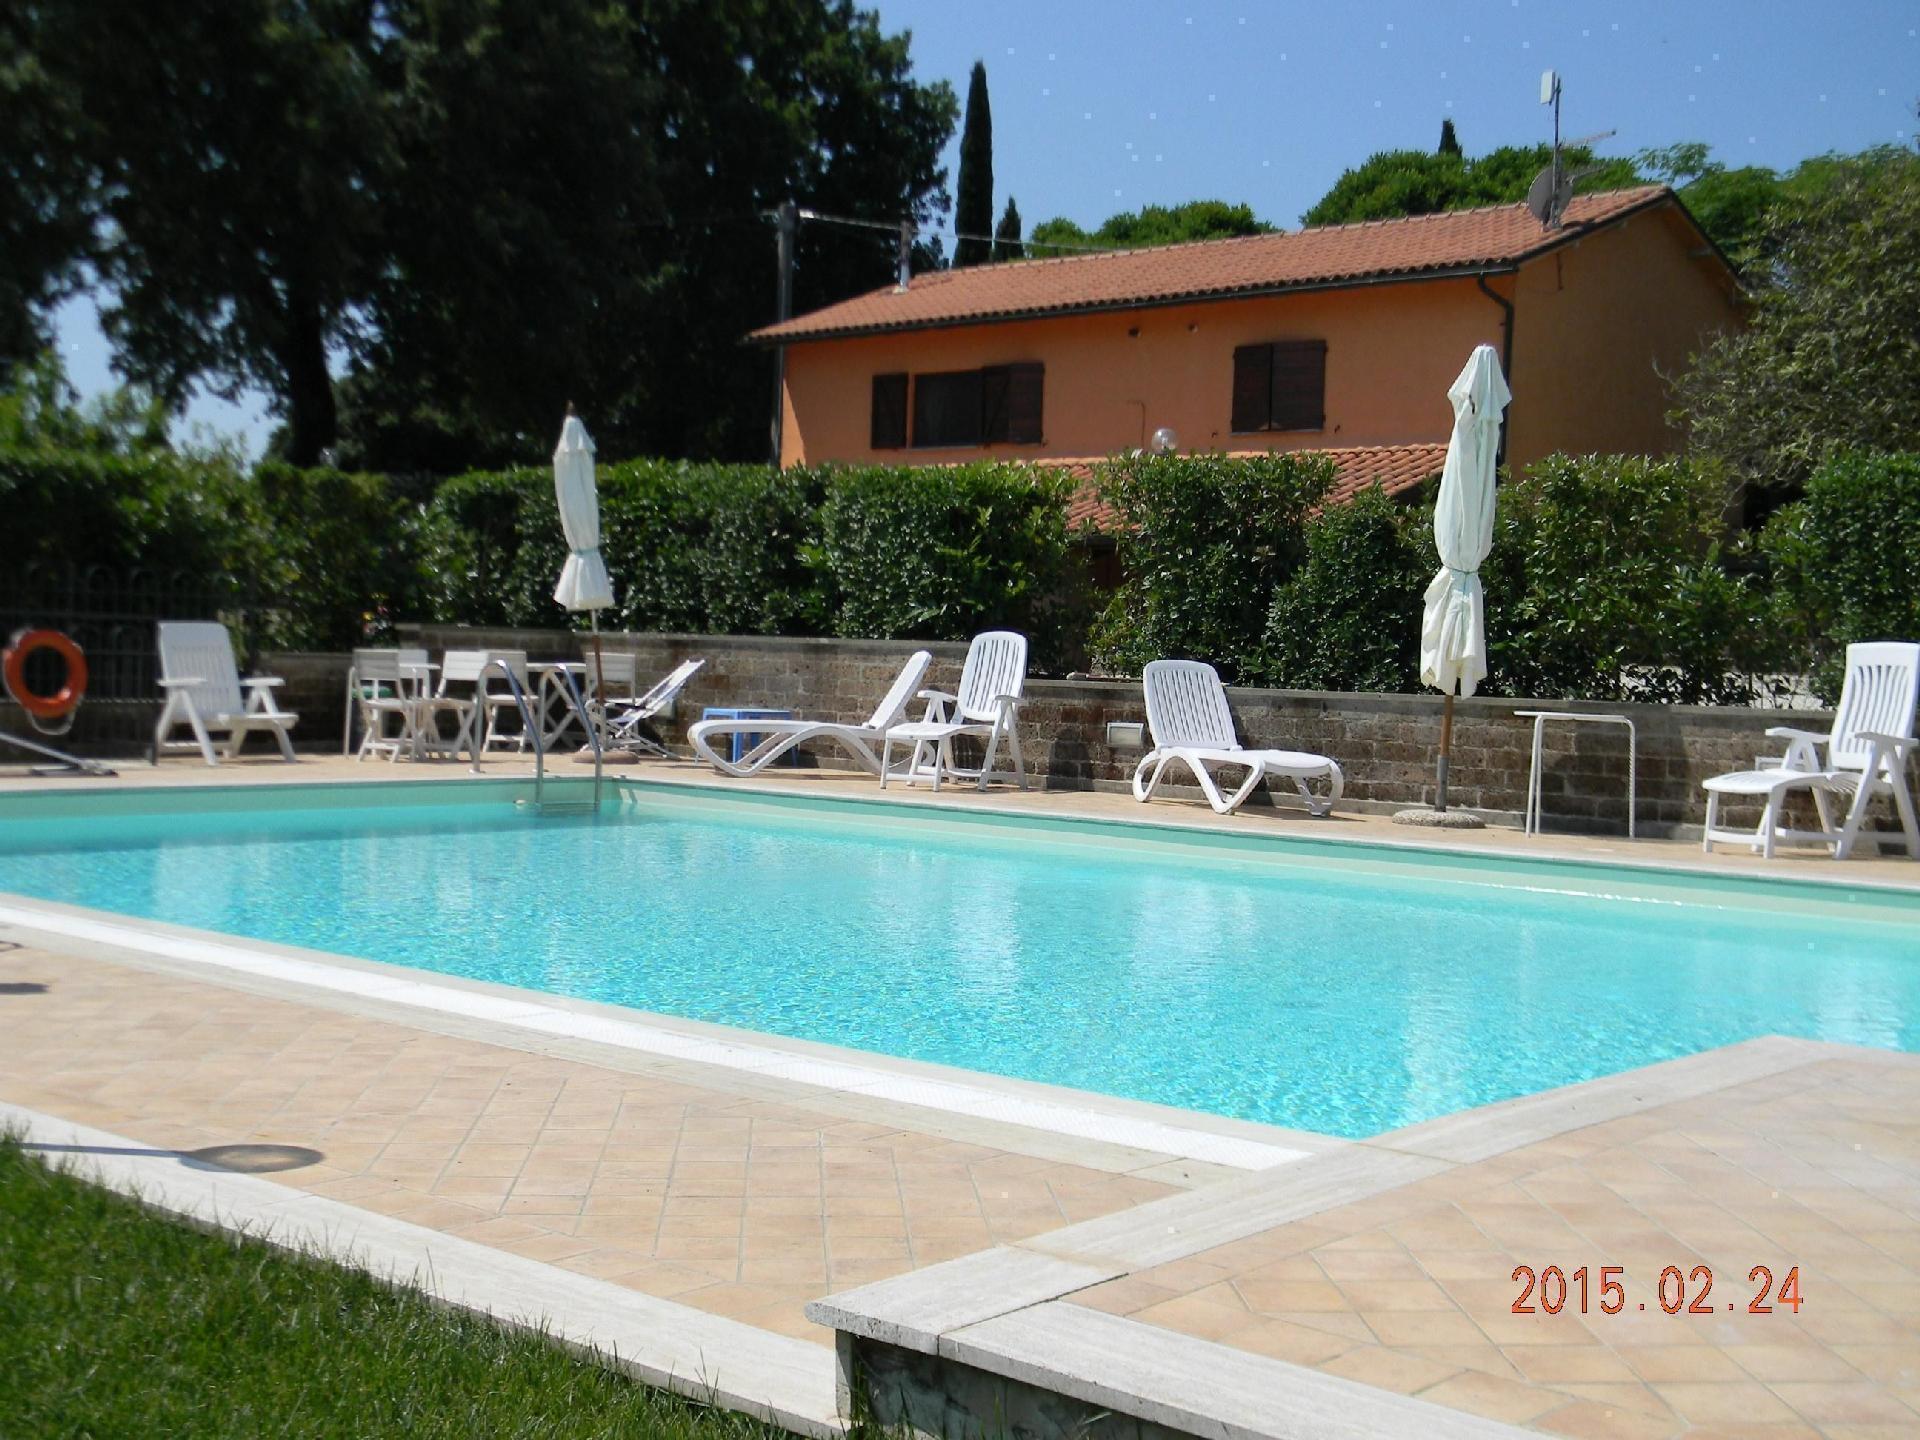 Ferienwohnung für 6 Personen ca. 65 m² i Ferienhaus in Italien